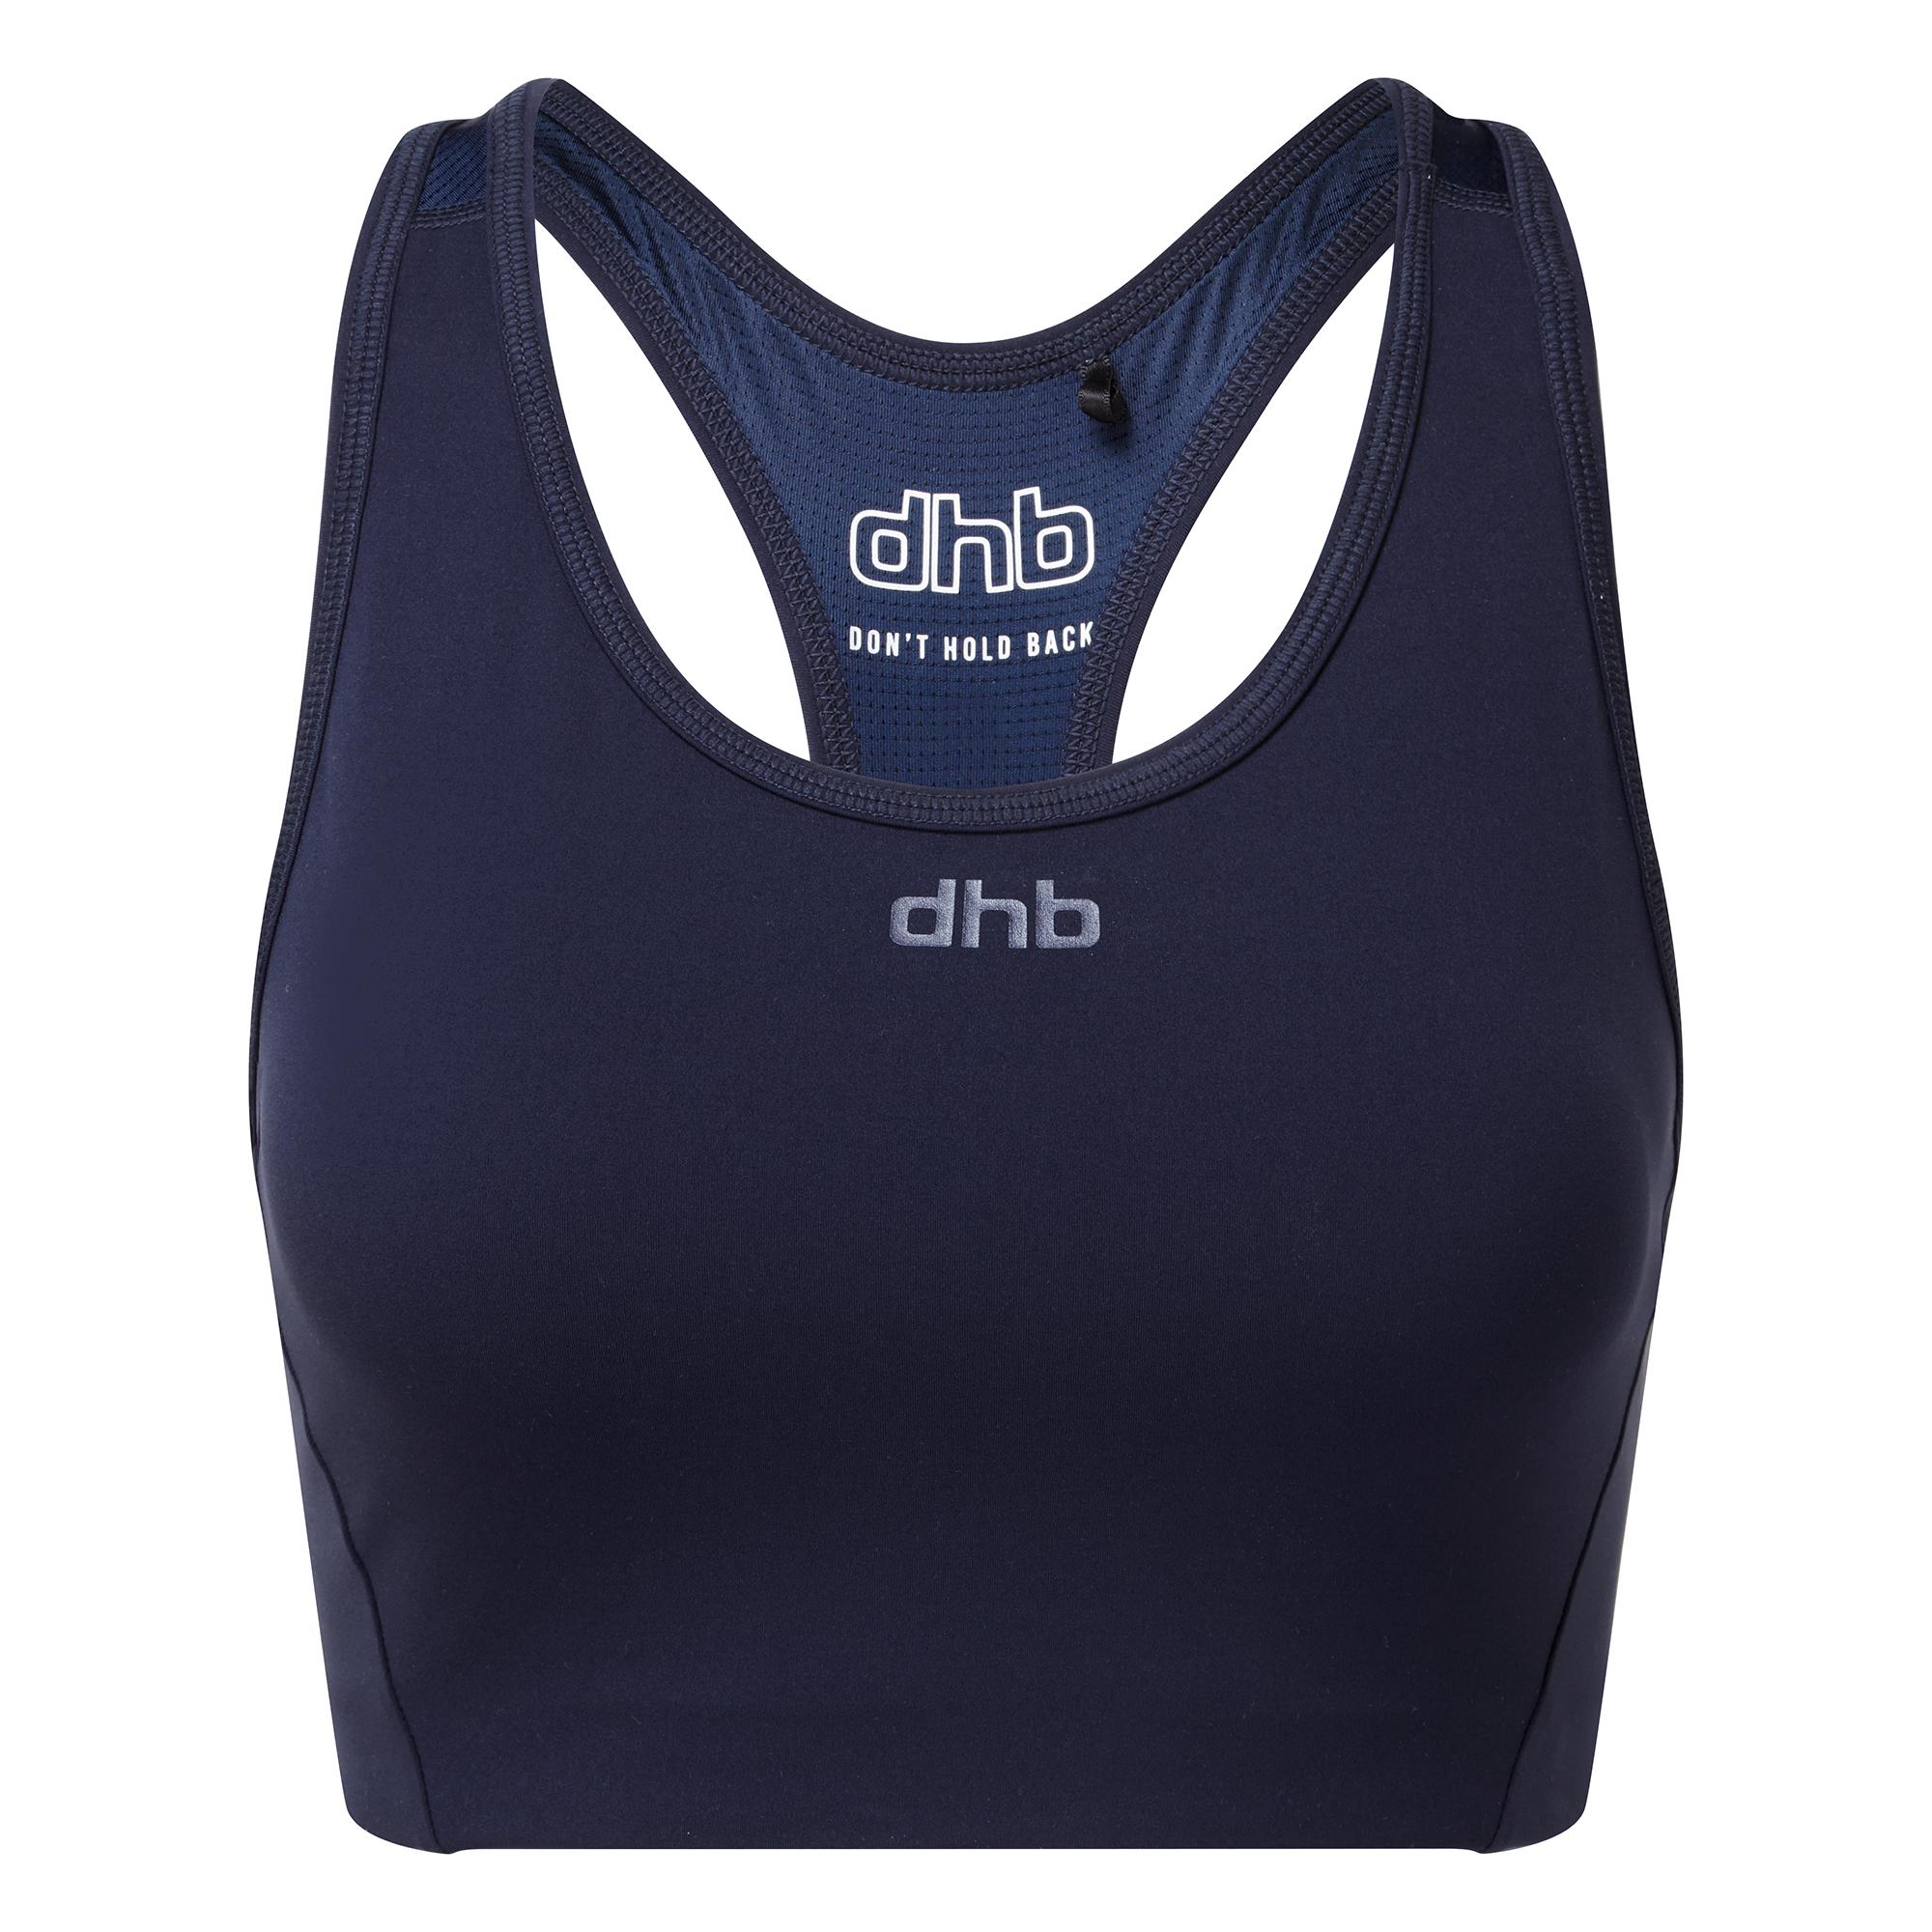 Dhb Womens Medium Support Sports Bra - Navy Blazer